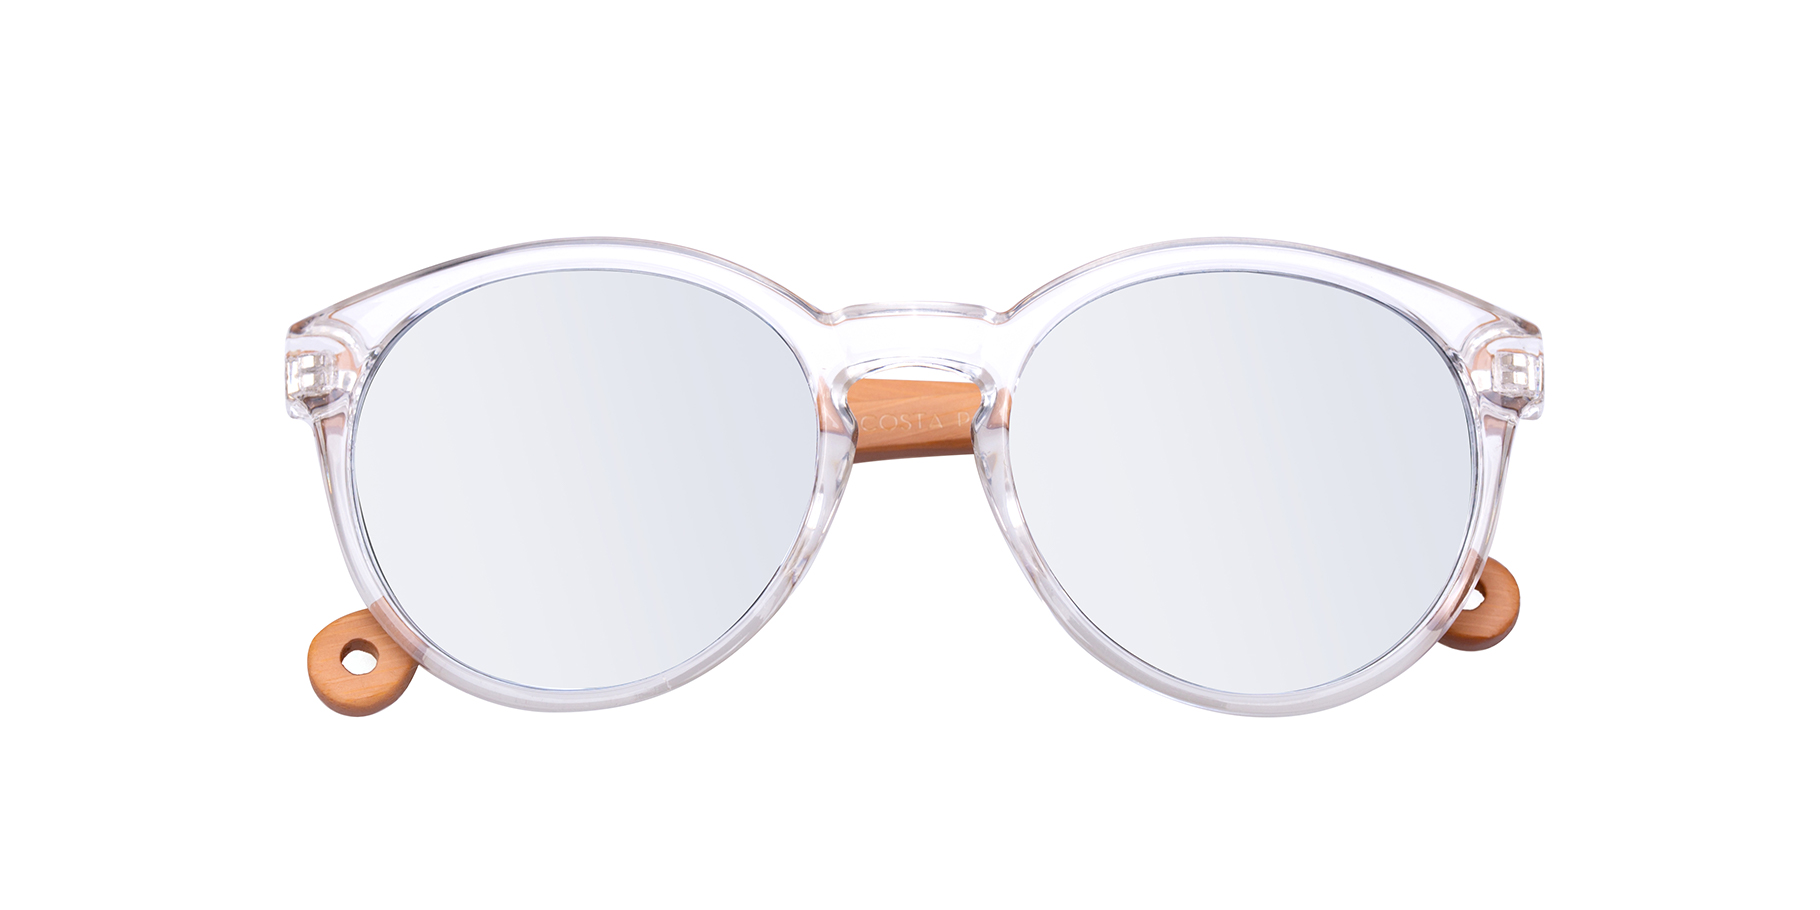 Parafina Sustainable Sunglasses Costa Transparent